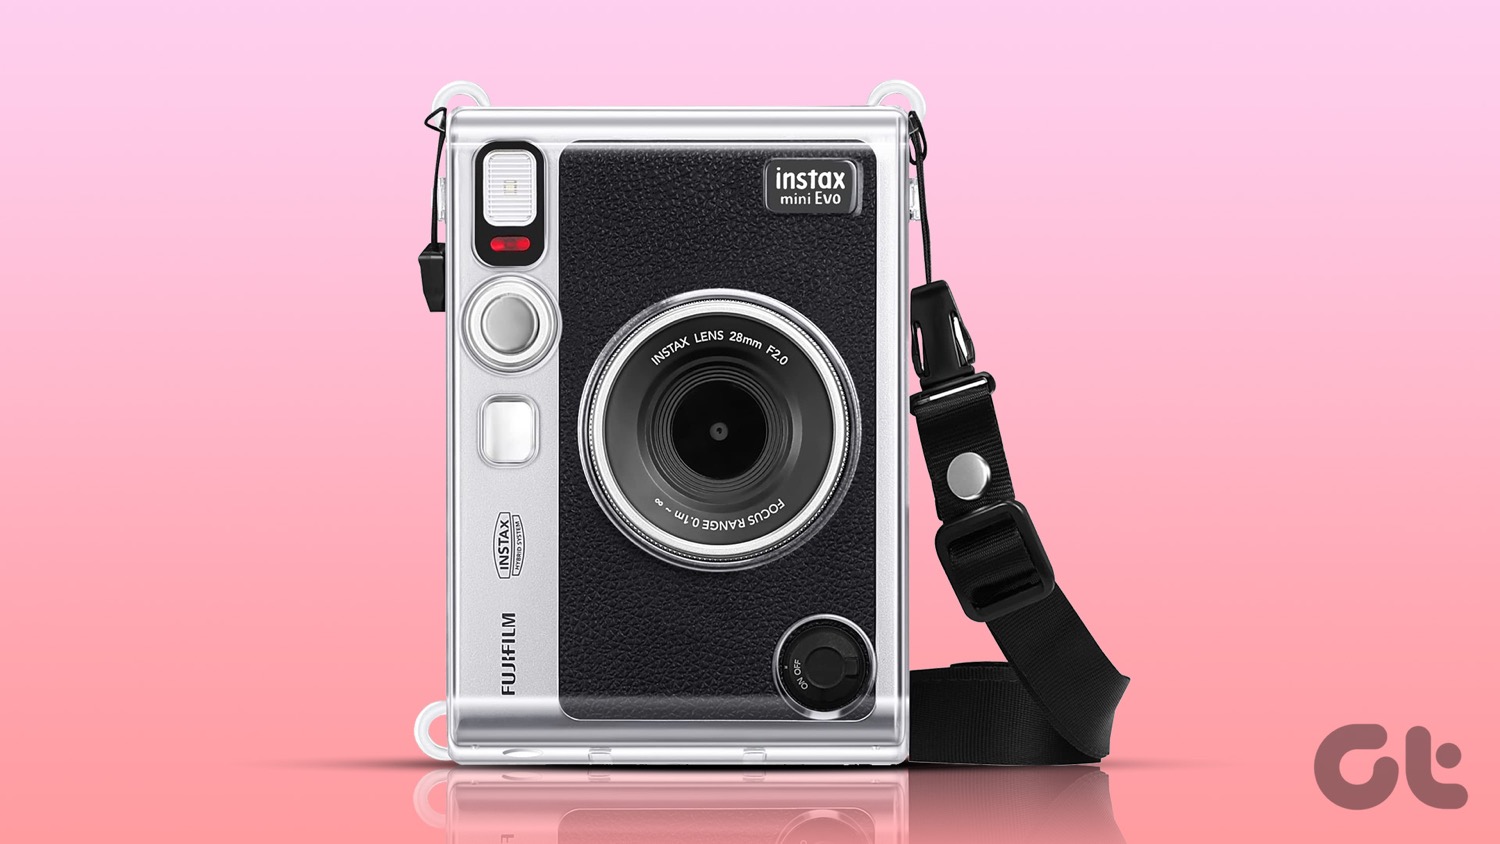 بهترین کیس های Fujifilm Instax Mini Evo